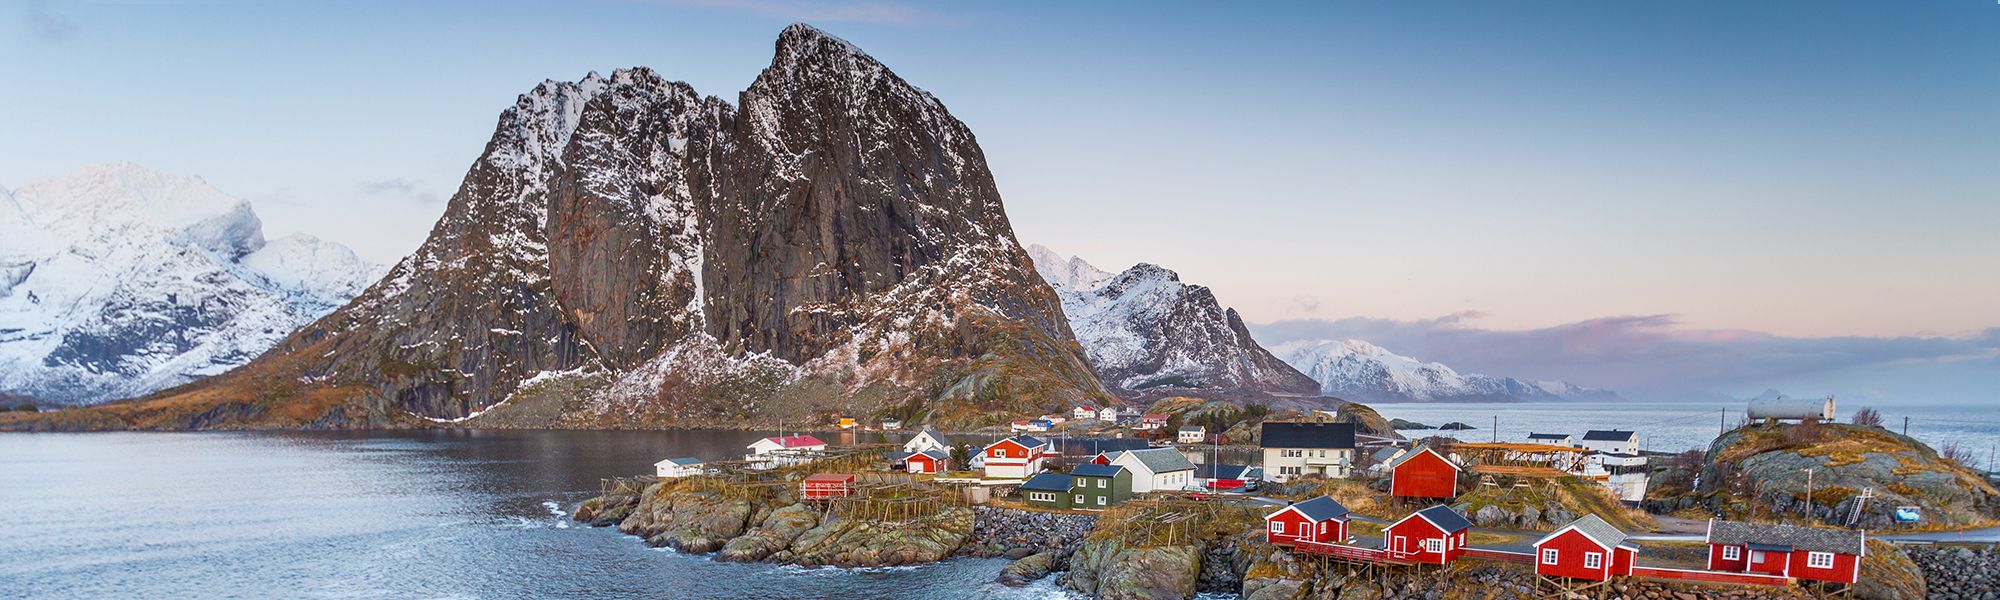 Découverte Cap Nord © Alex Cornu - Visit Norway